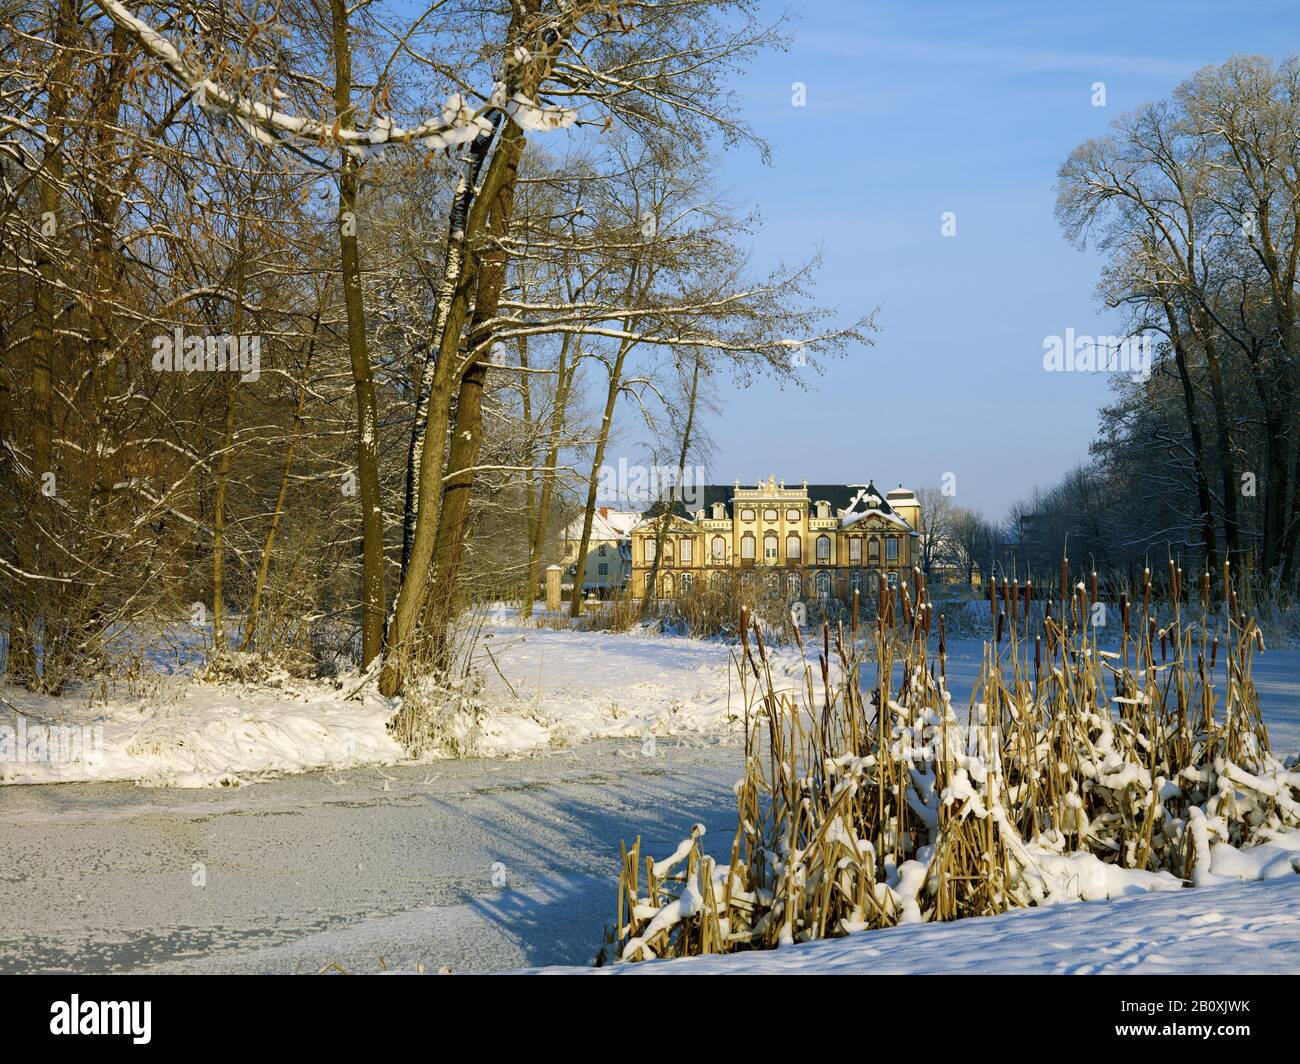 Molsdorf Castello, palazzo estivo con parco in inverno, Molsdorf vicino Erfurt, Turingia, Germania, Foto Stock